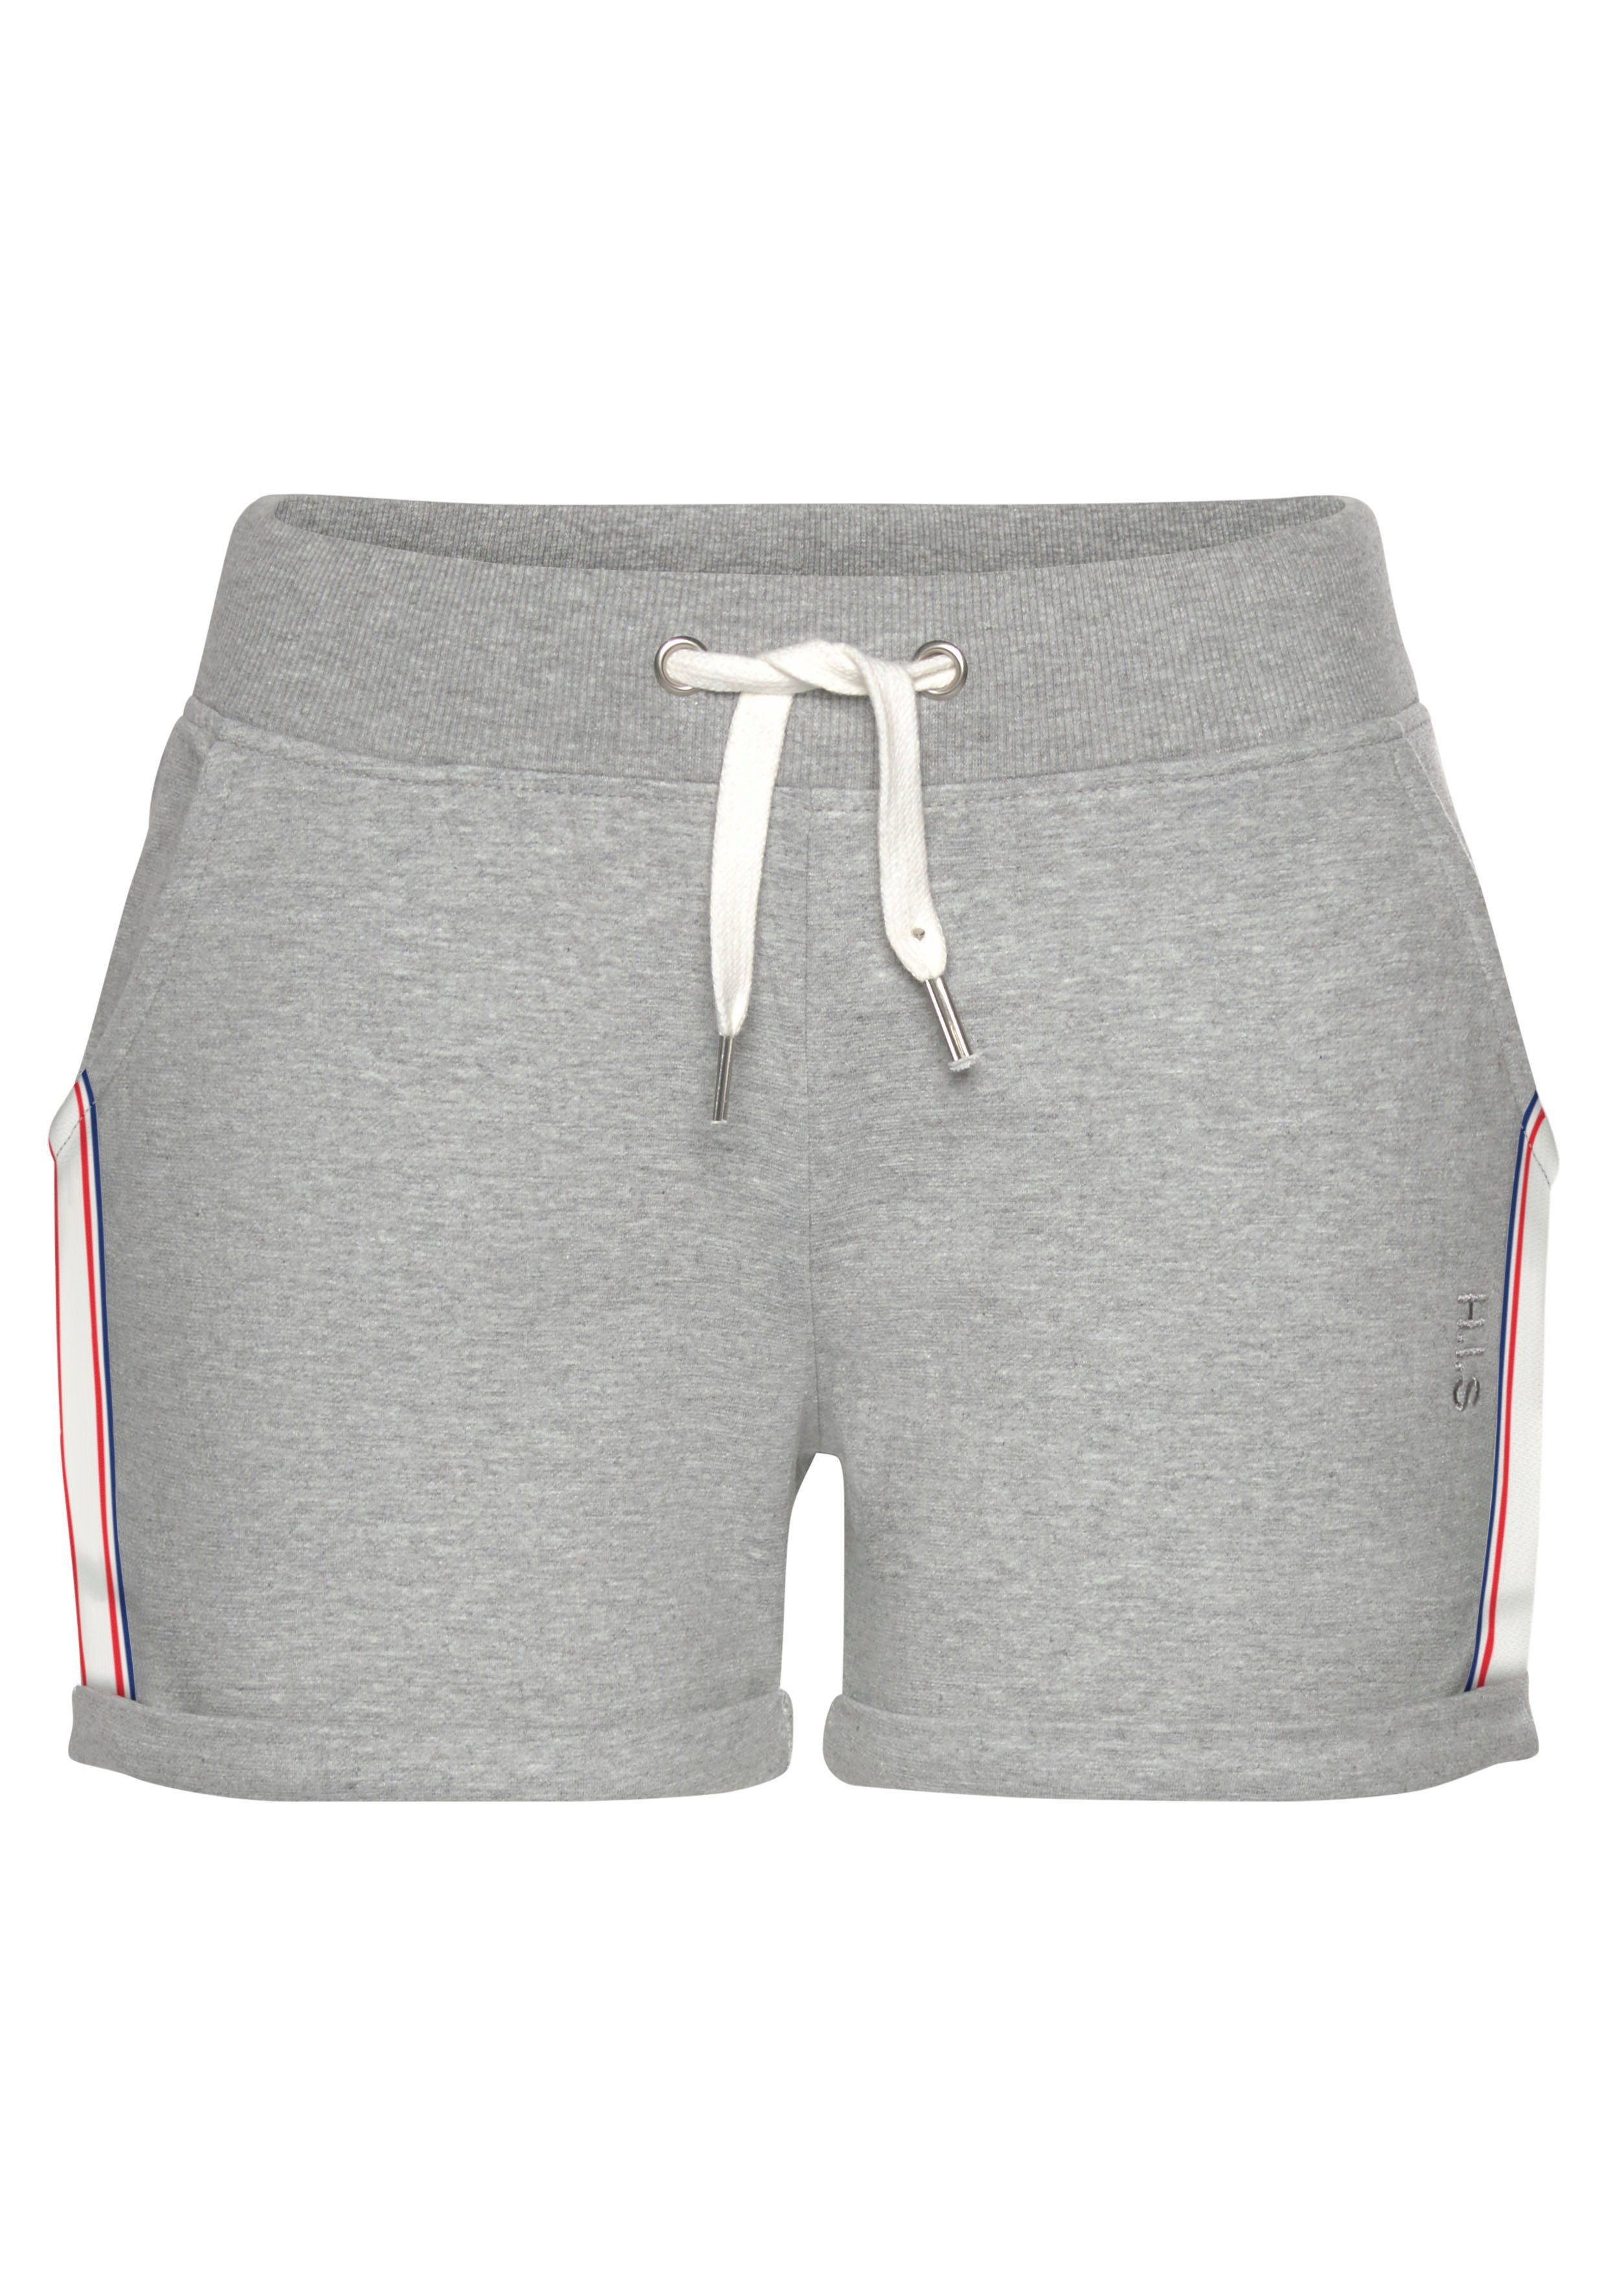 Tapestreifen Shorts mit grau-meliert seitlichen H.I.S